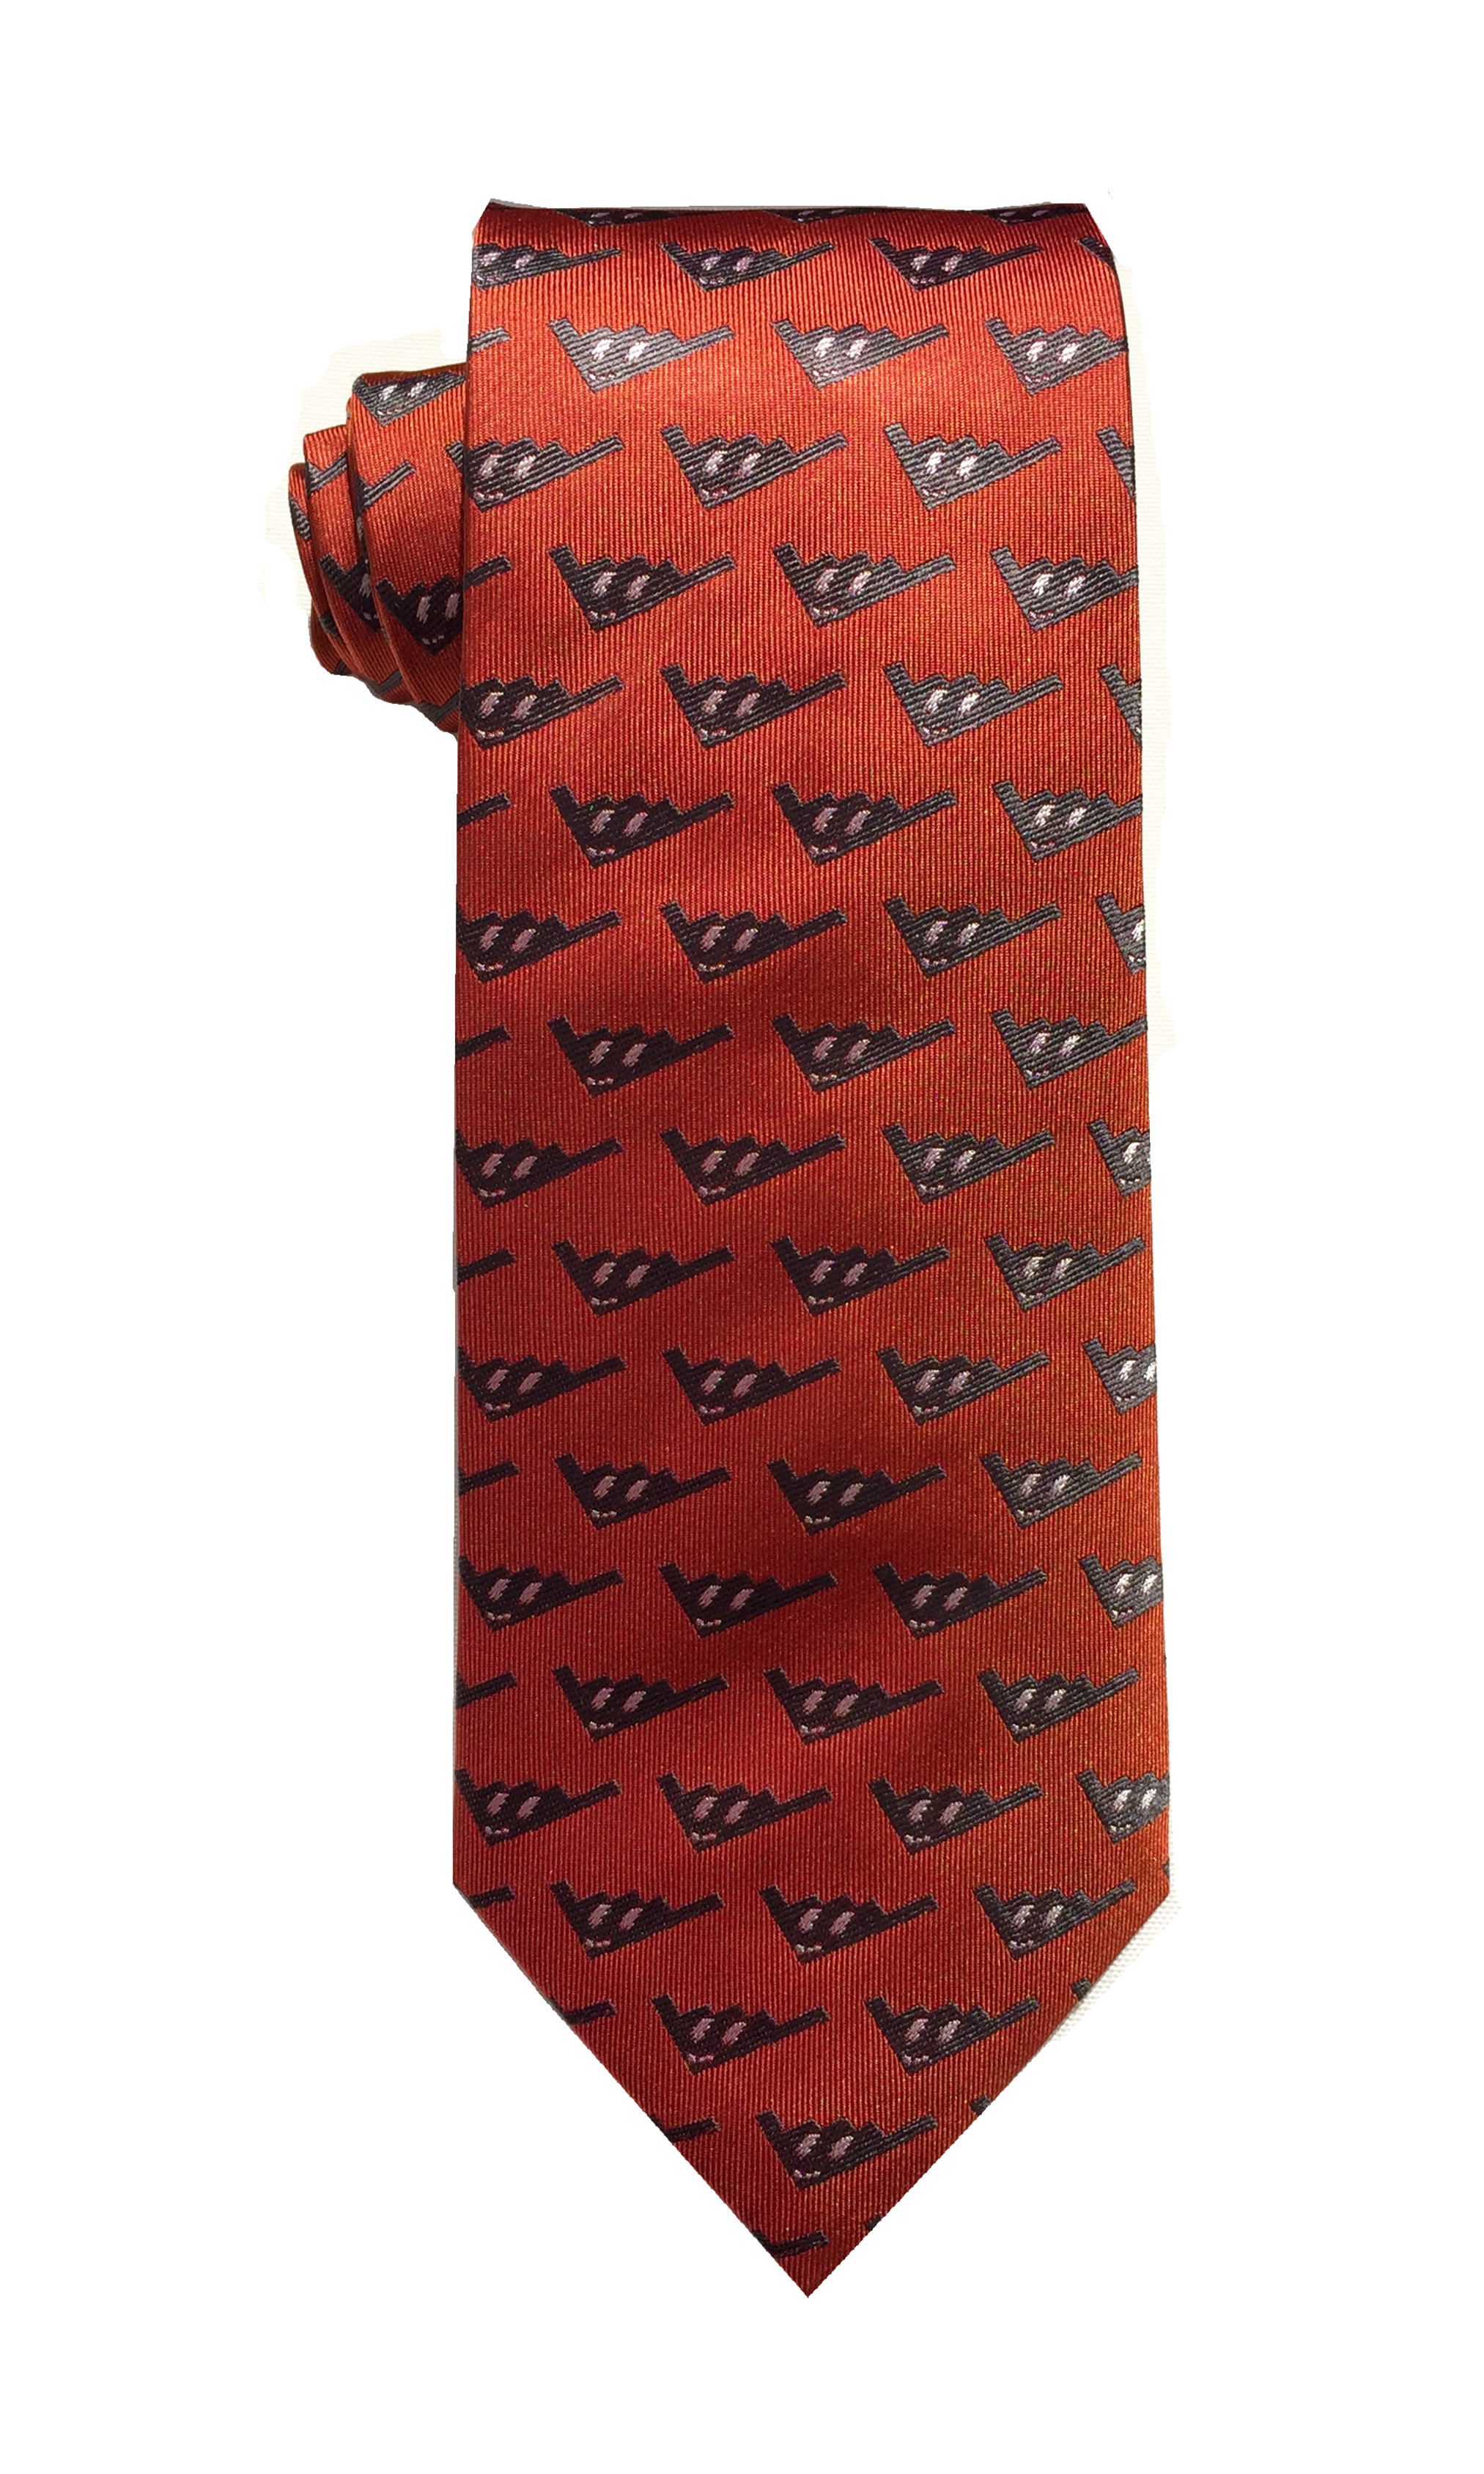 doppeldecker design designer aviation aircraft silk bow tie bowtie 